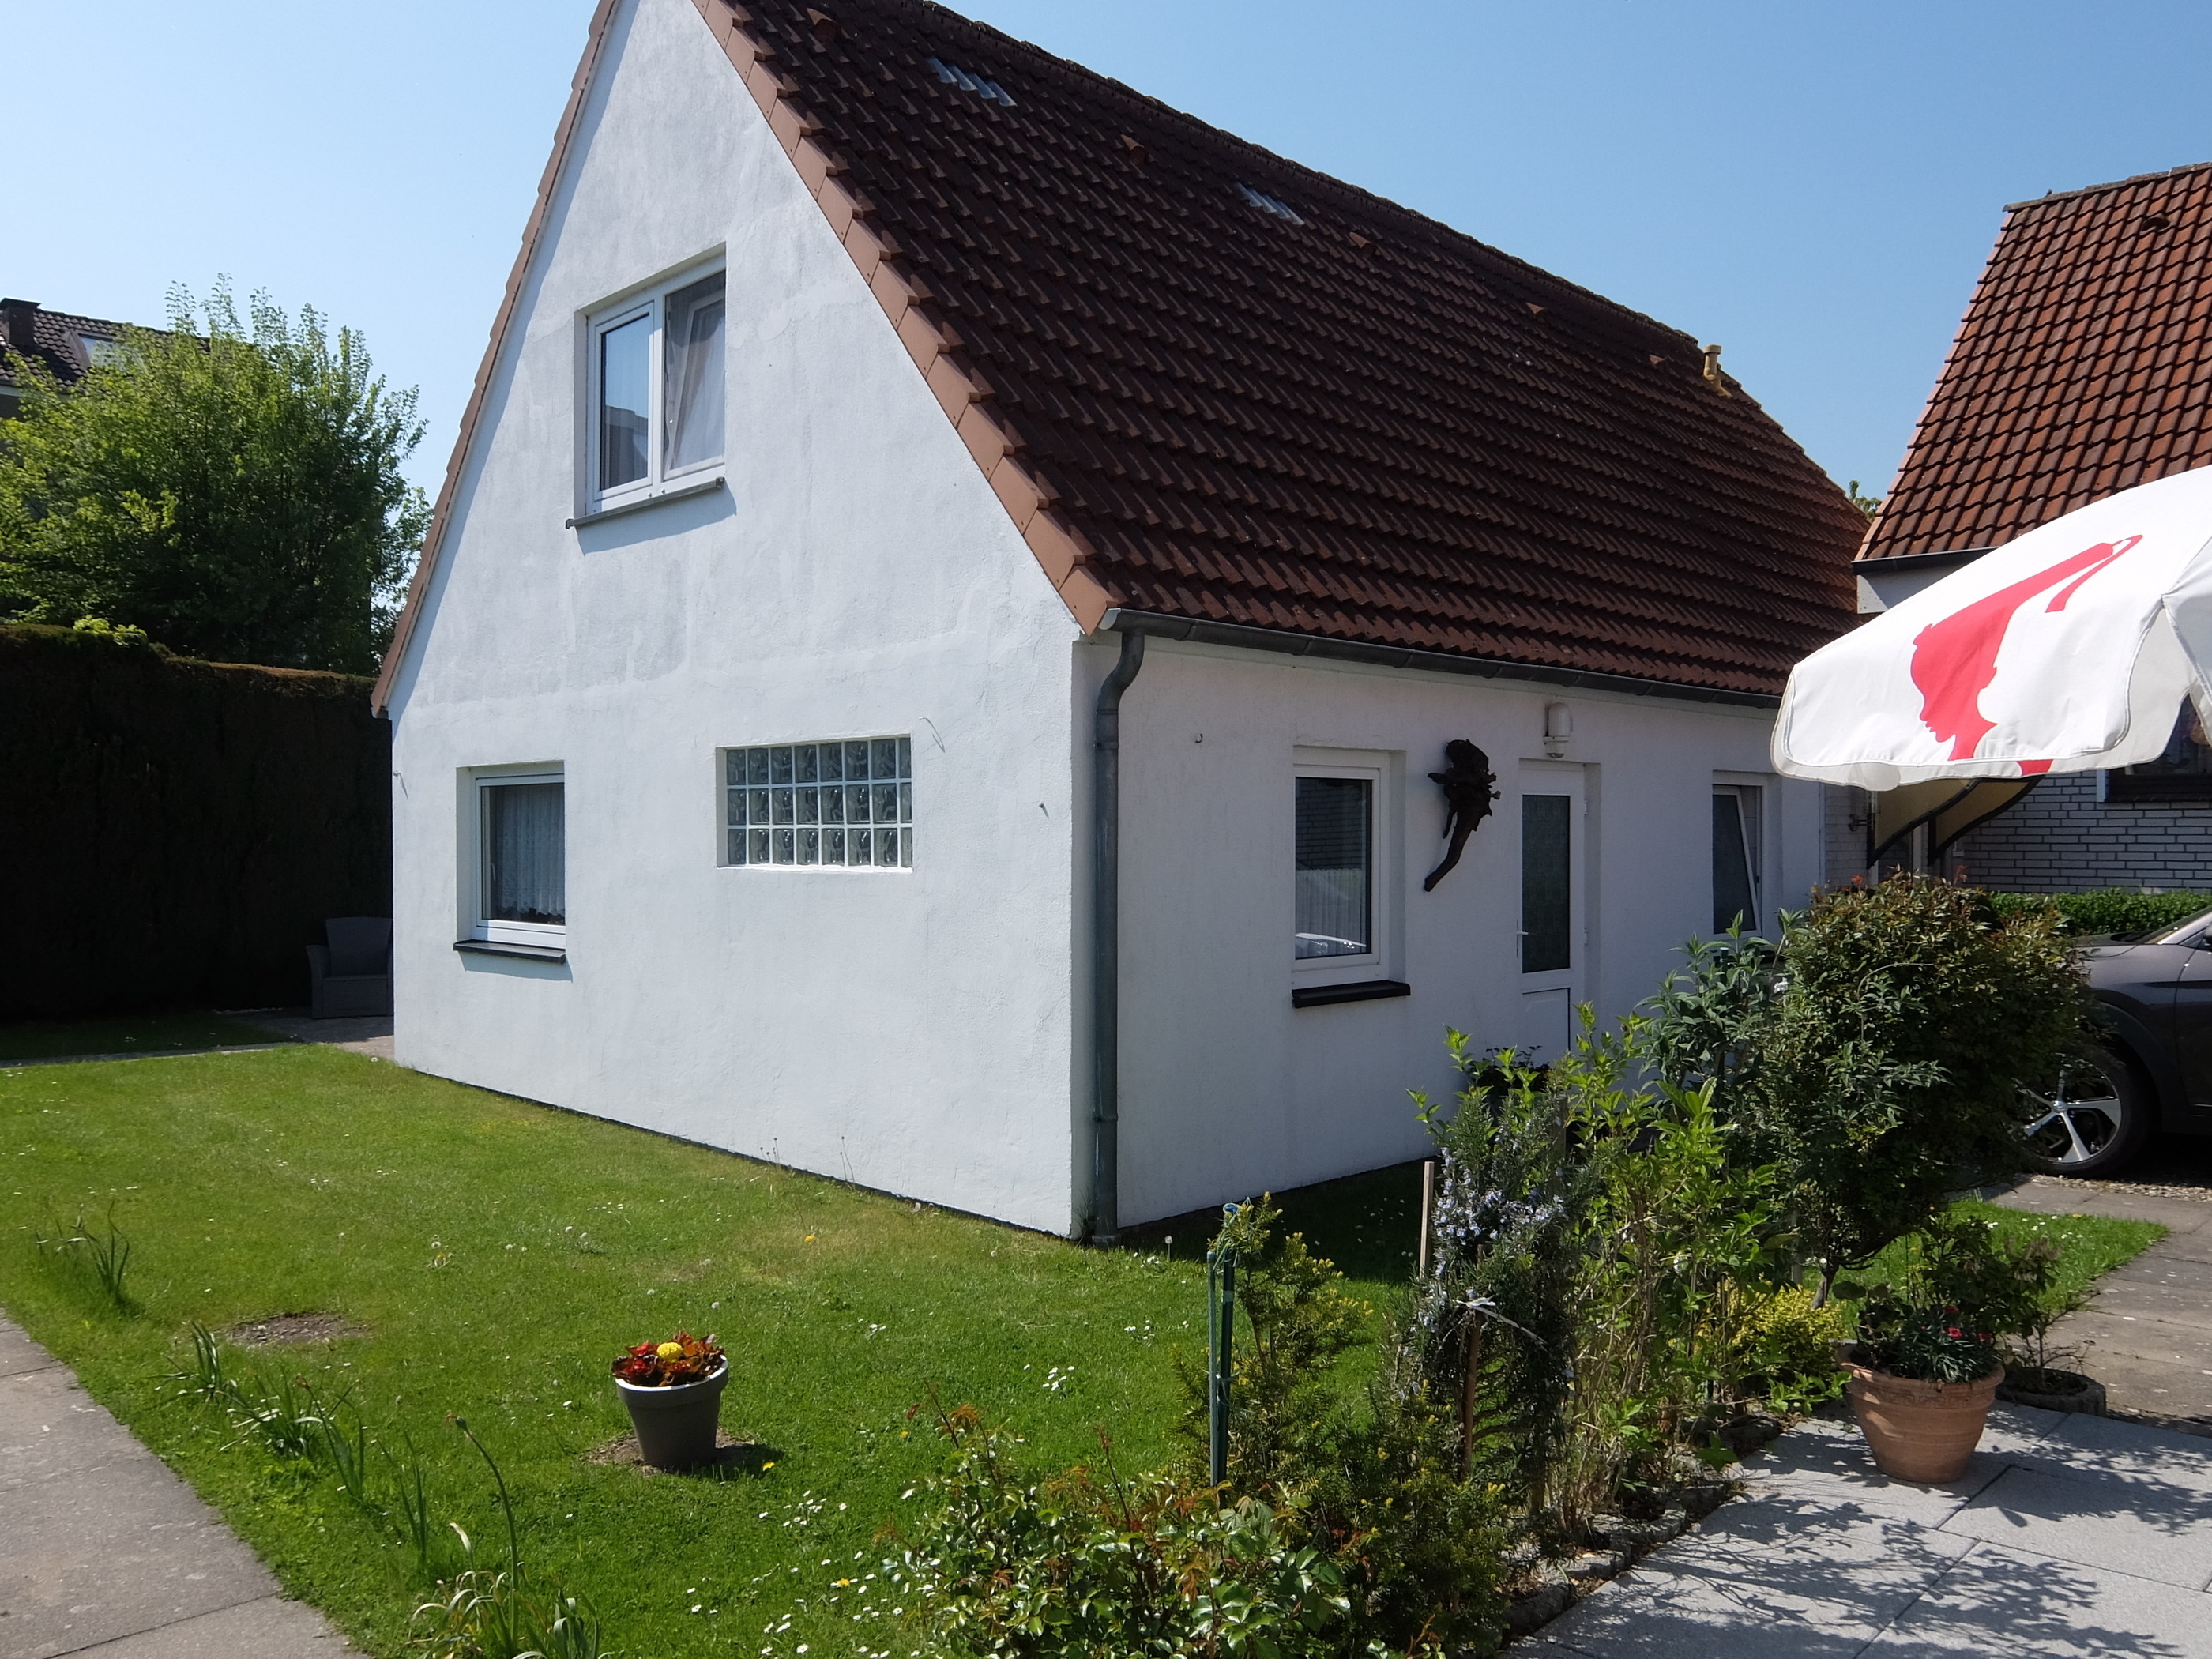 Haus Eifler Ferienhaus in Schleswig Holstein